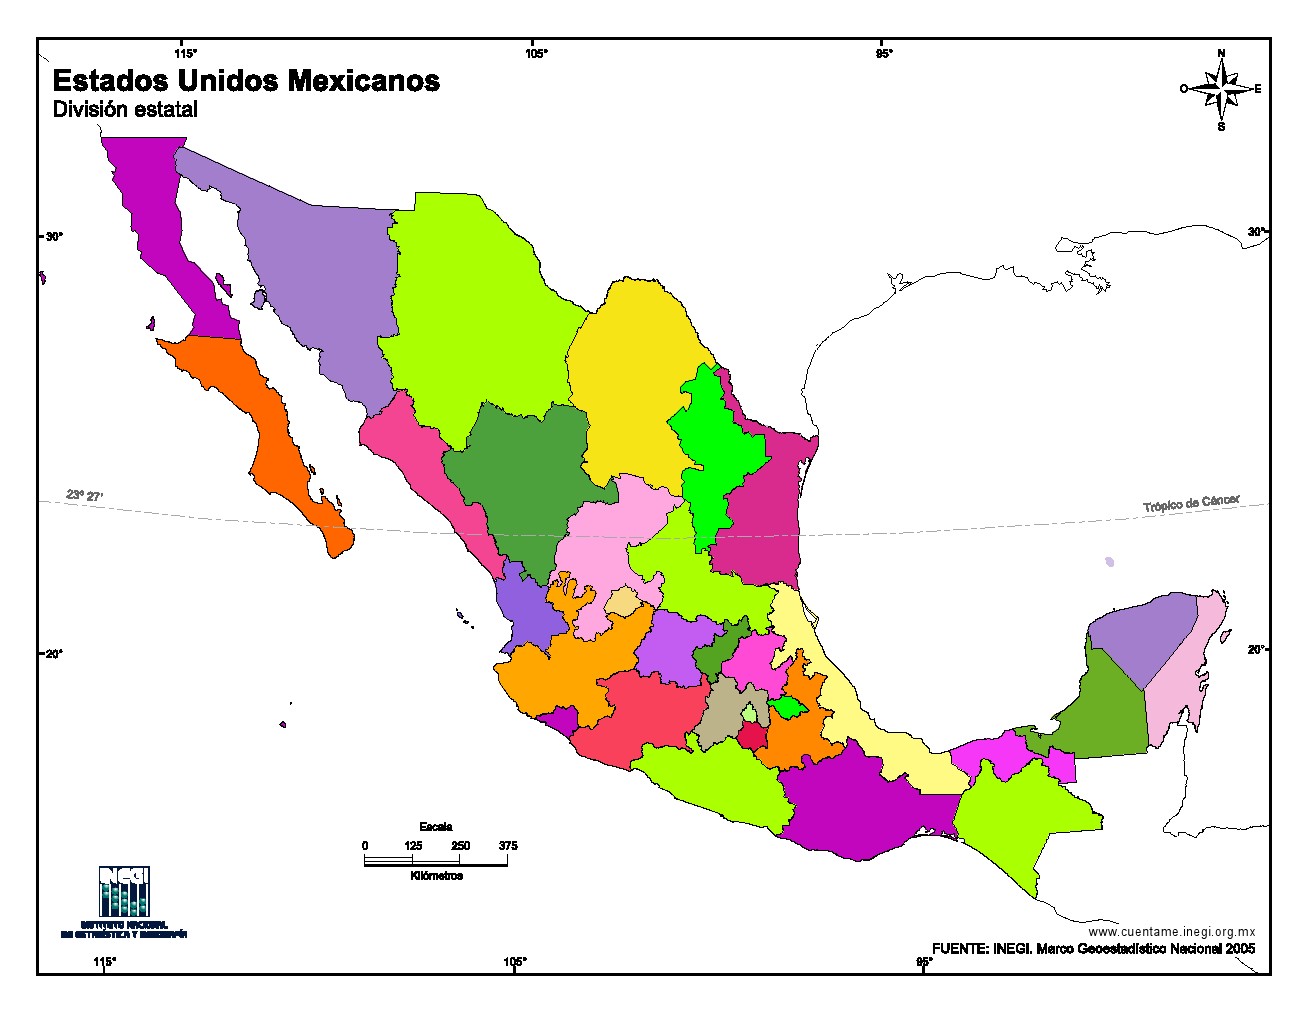 Mapa mudo en color de Estados Unidos Mexicanos. INEGI de México